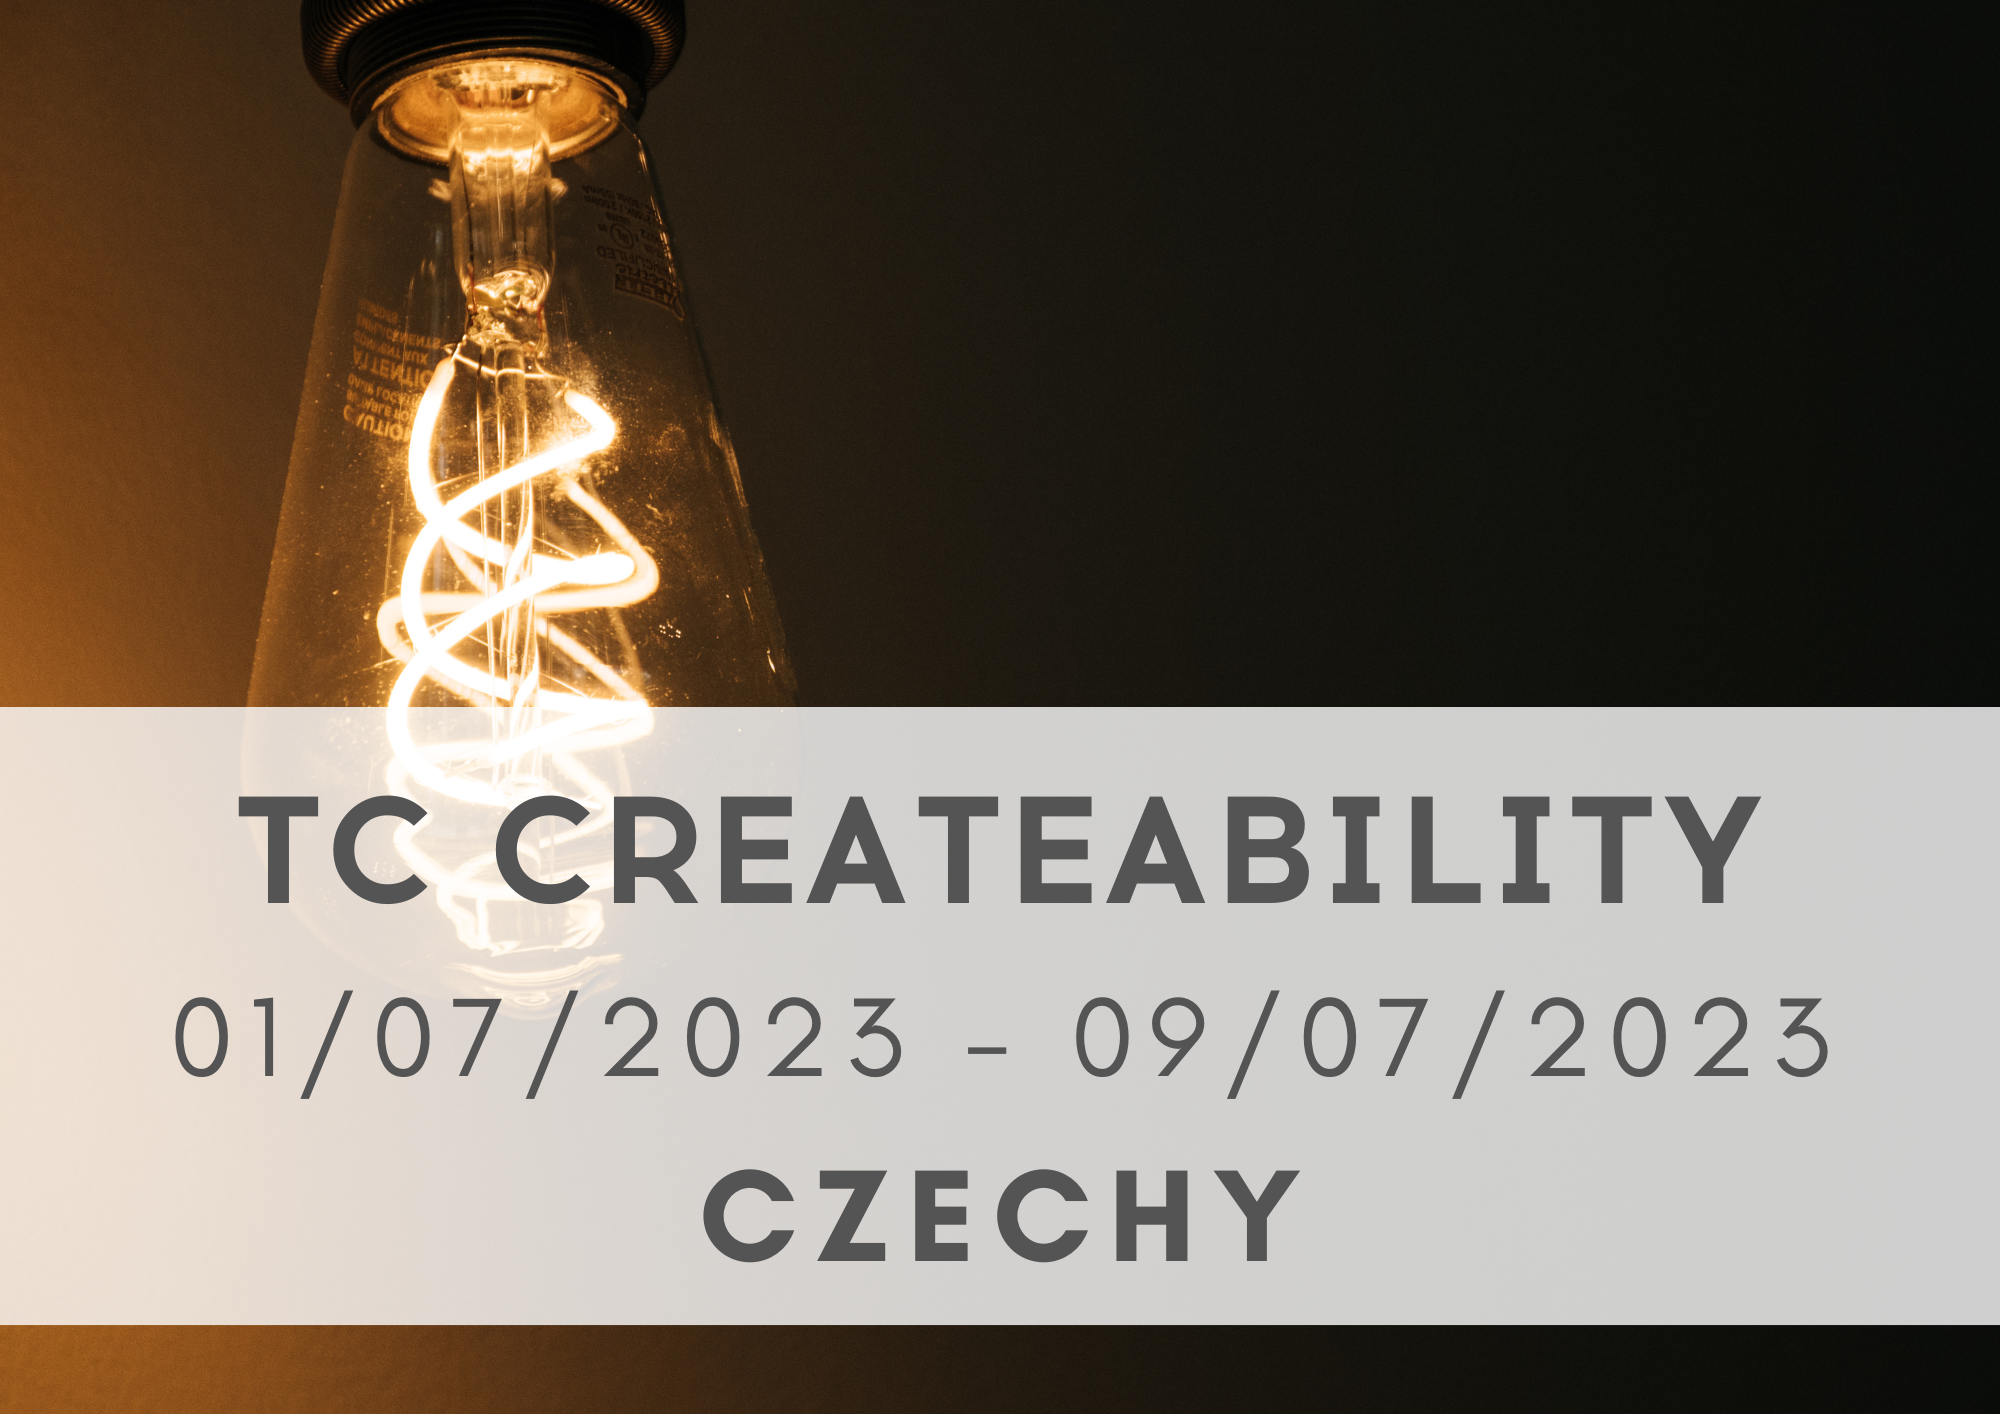 TC CreateAbility, 01/07-09/07/2023, Czechy